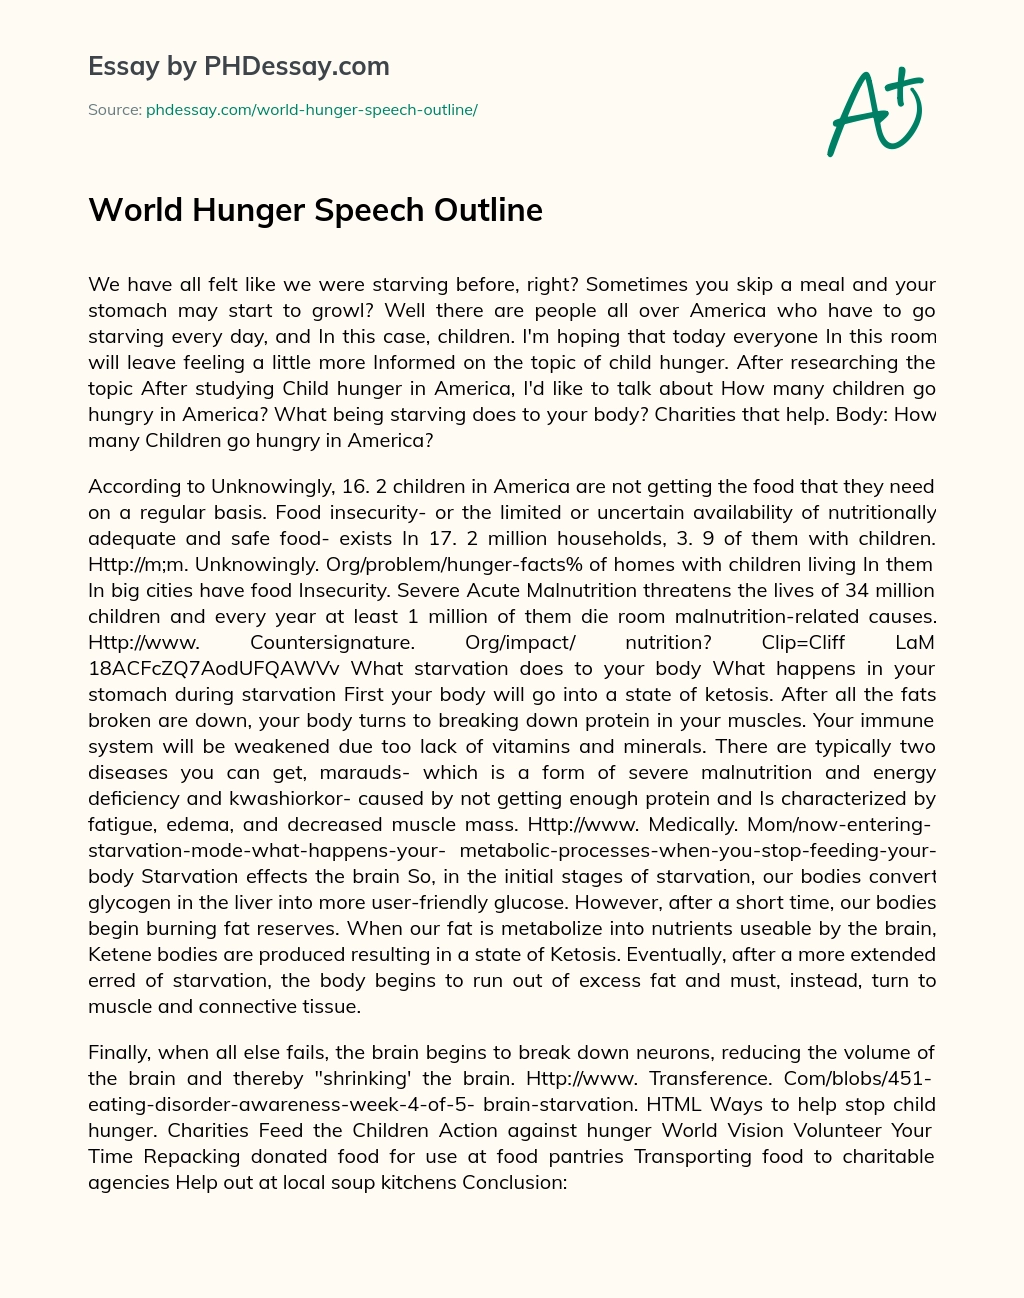 World Hunger Speech Outline essay